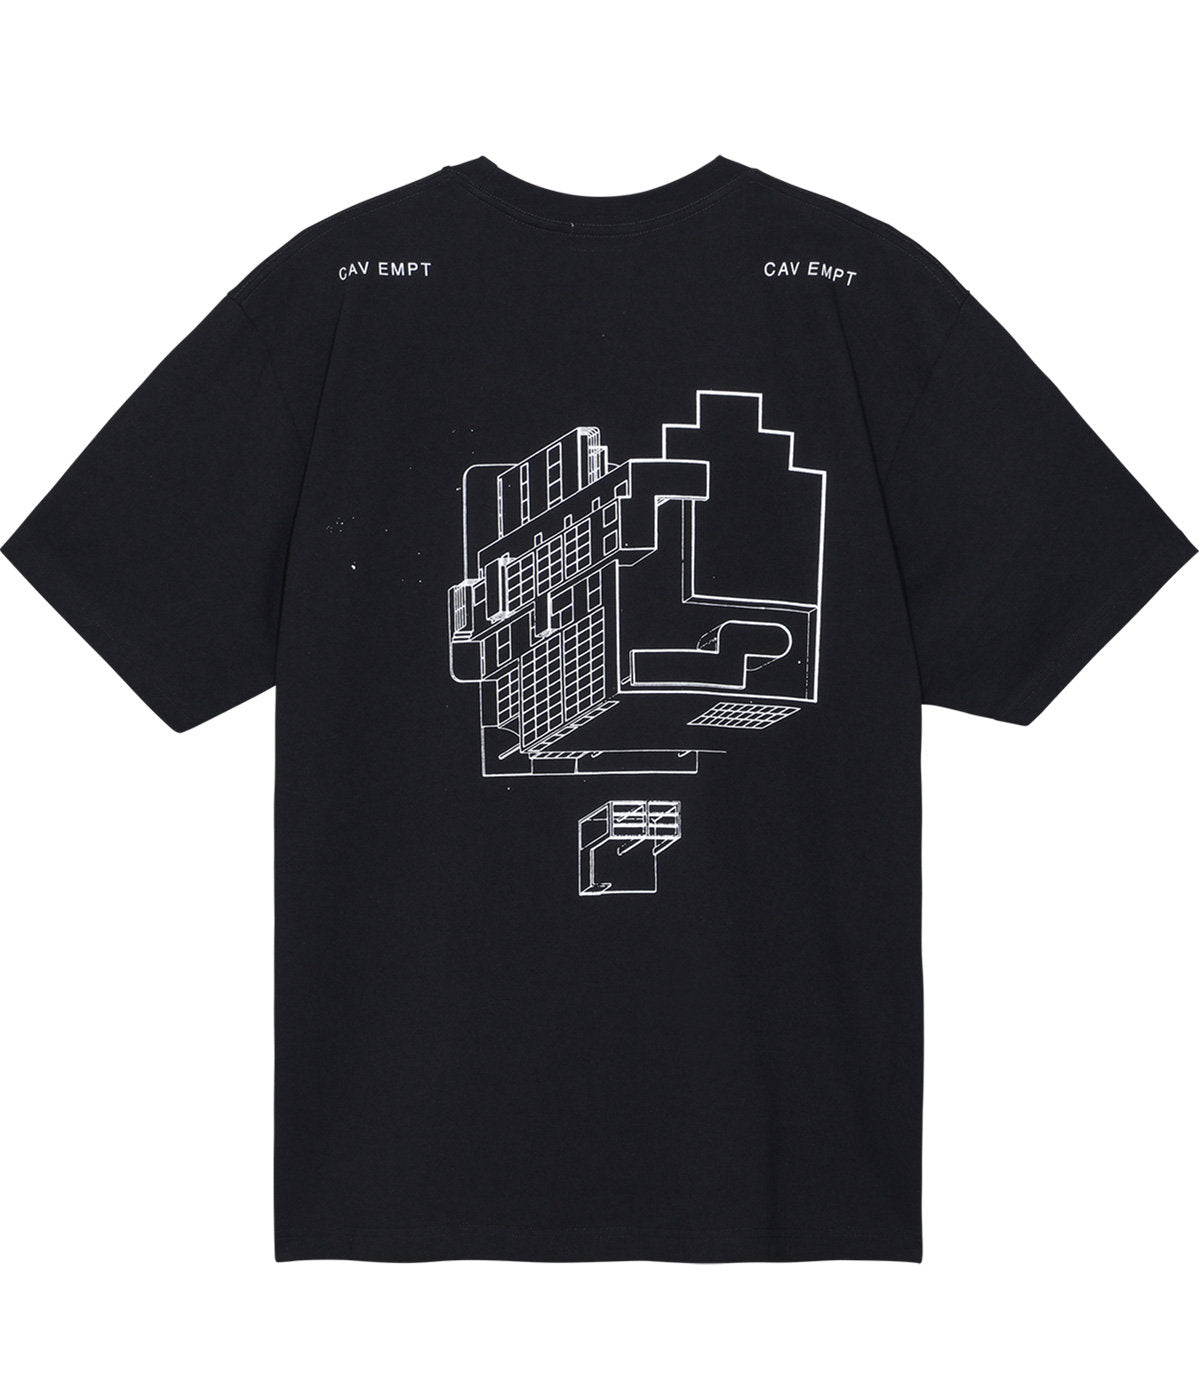 シャツ種類ドレスシャツC.E CAVEMPT サイバーパンクデザインシャツ XL ...